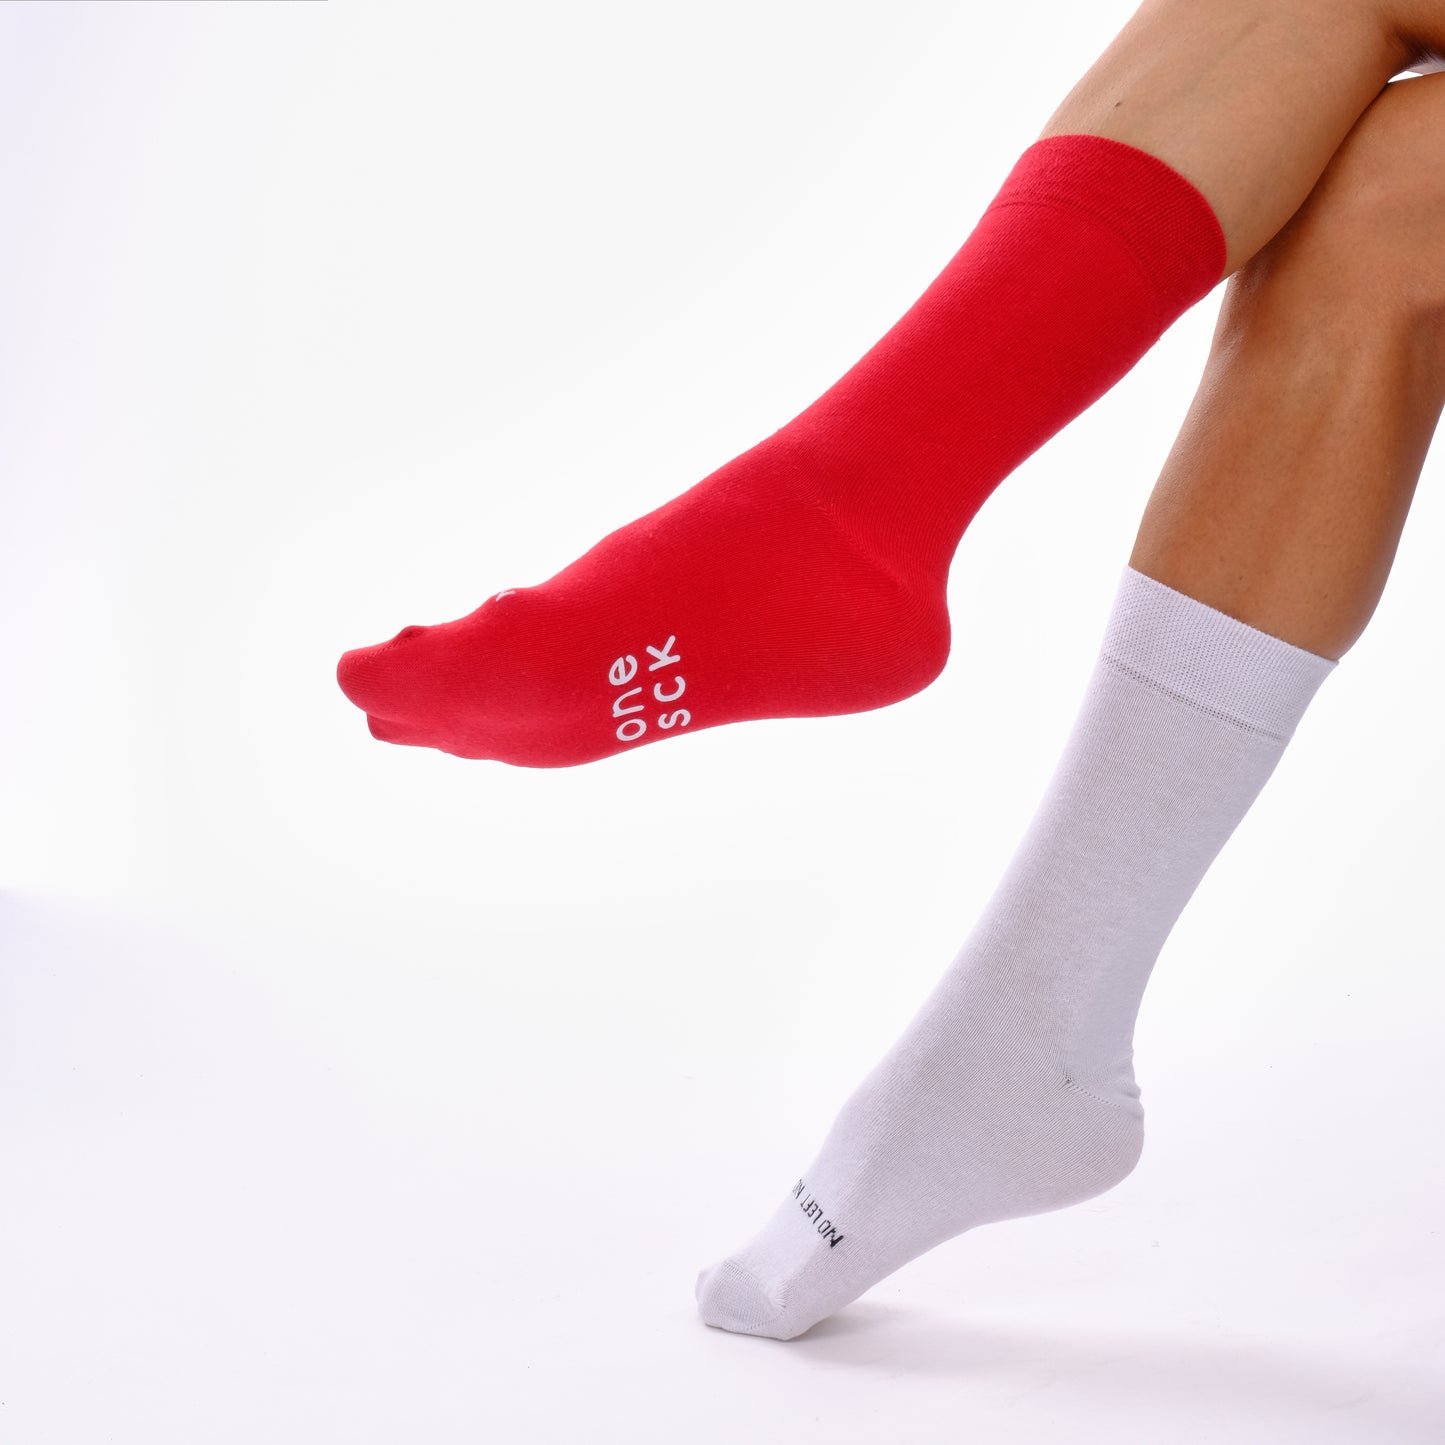 Red & Off White Fans Odd Socks